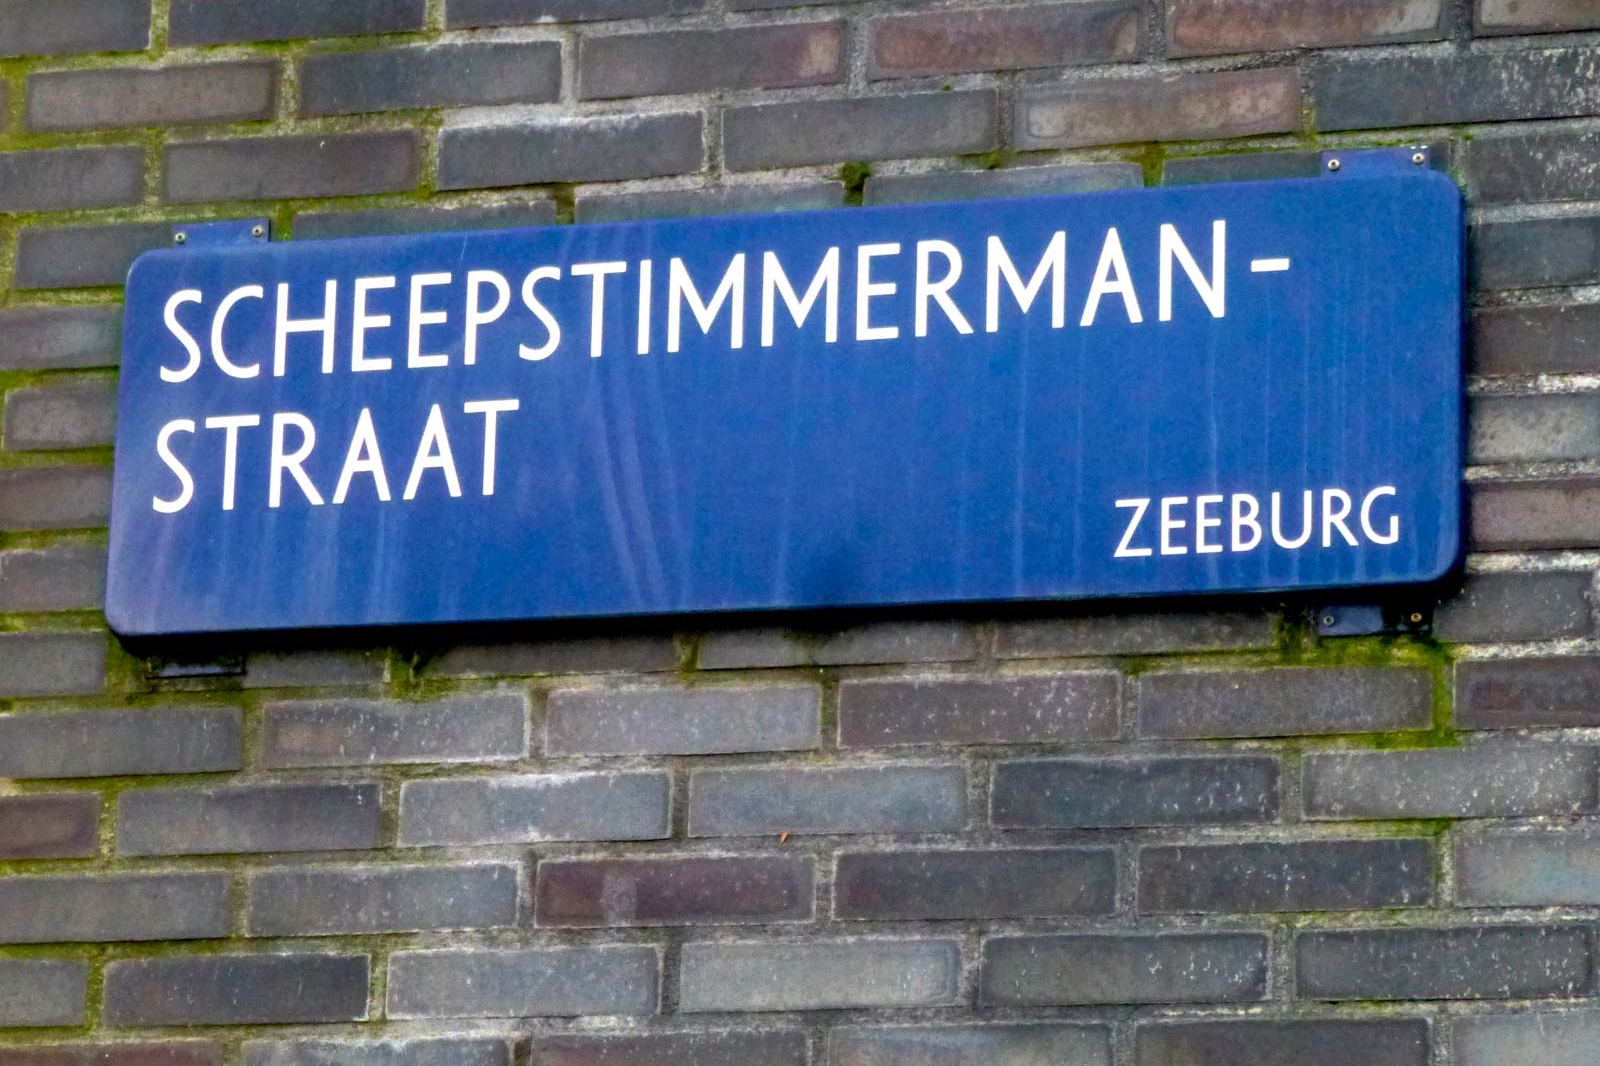 Scheepstimmerman Straat Amsterdam